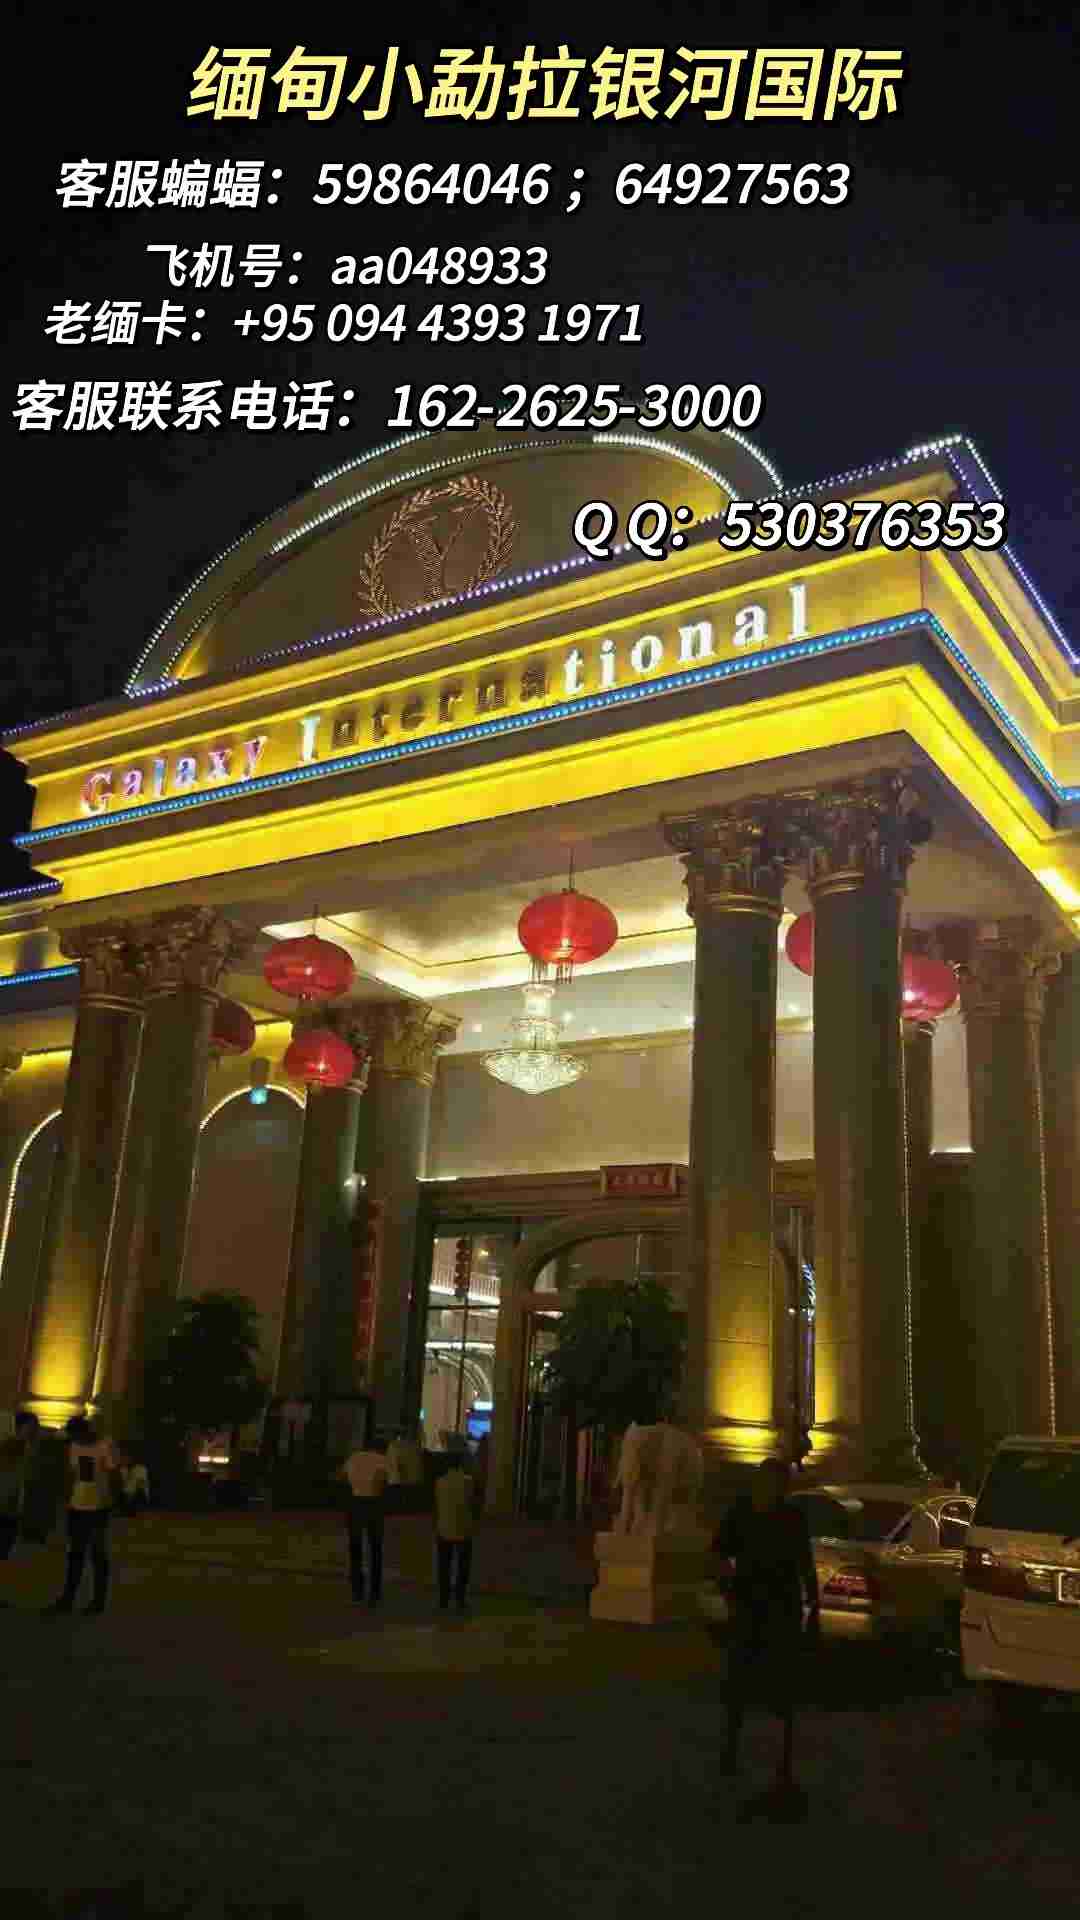 缅 甸小勐拉银河厅点击客服线上开户电话：162-2625-3000